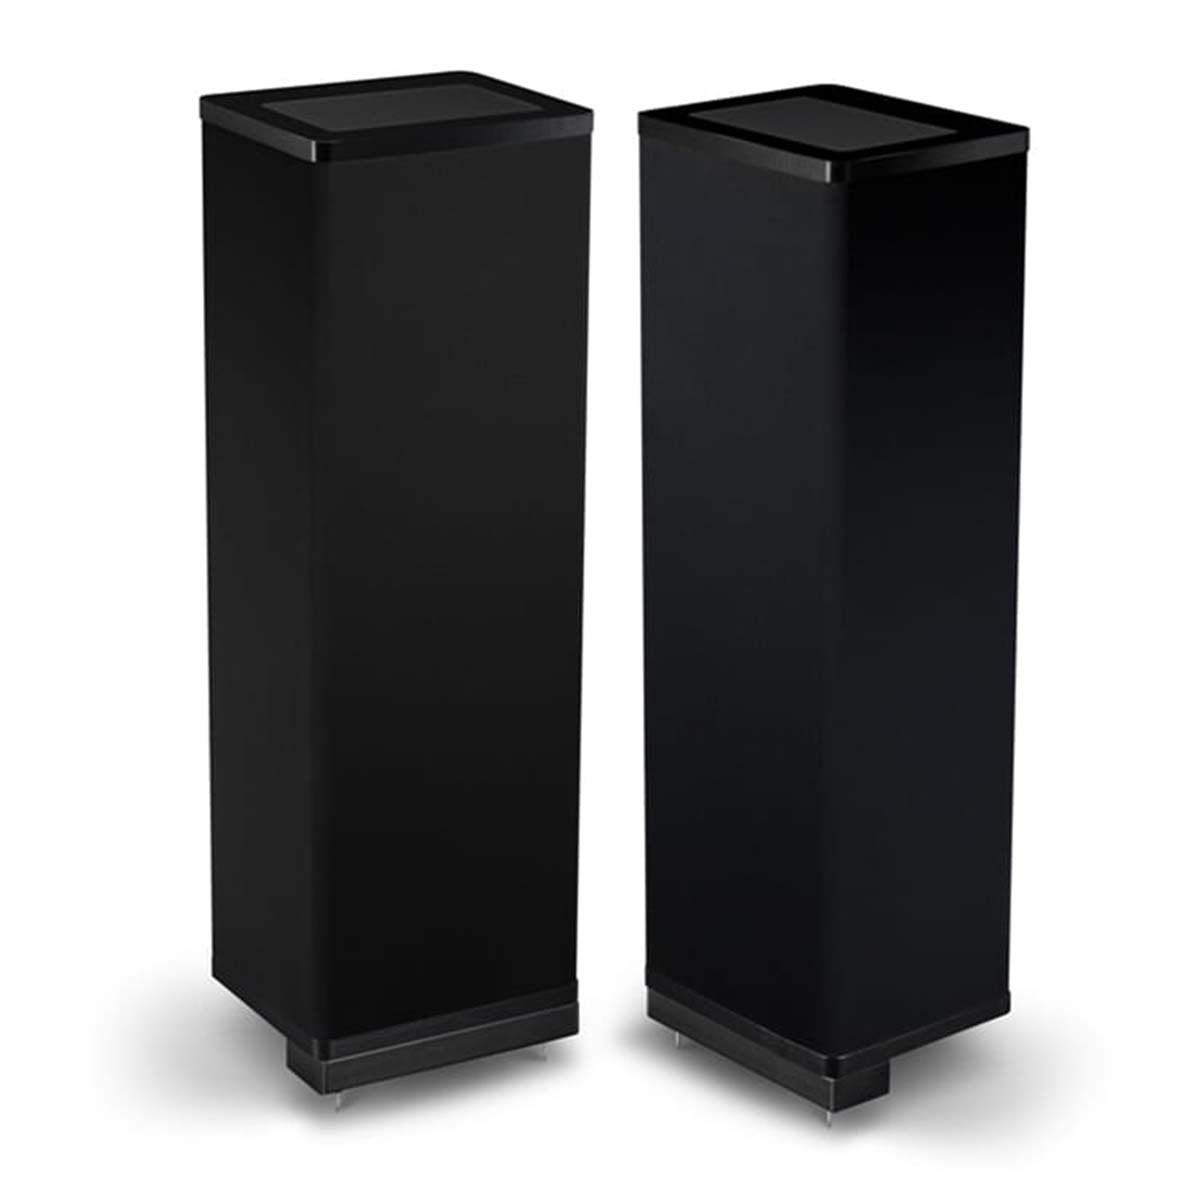 Vandersteen Model 1Ci+ Floorstanding Speakers, Black, pair